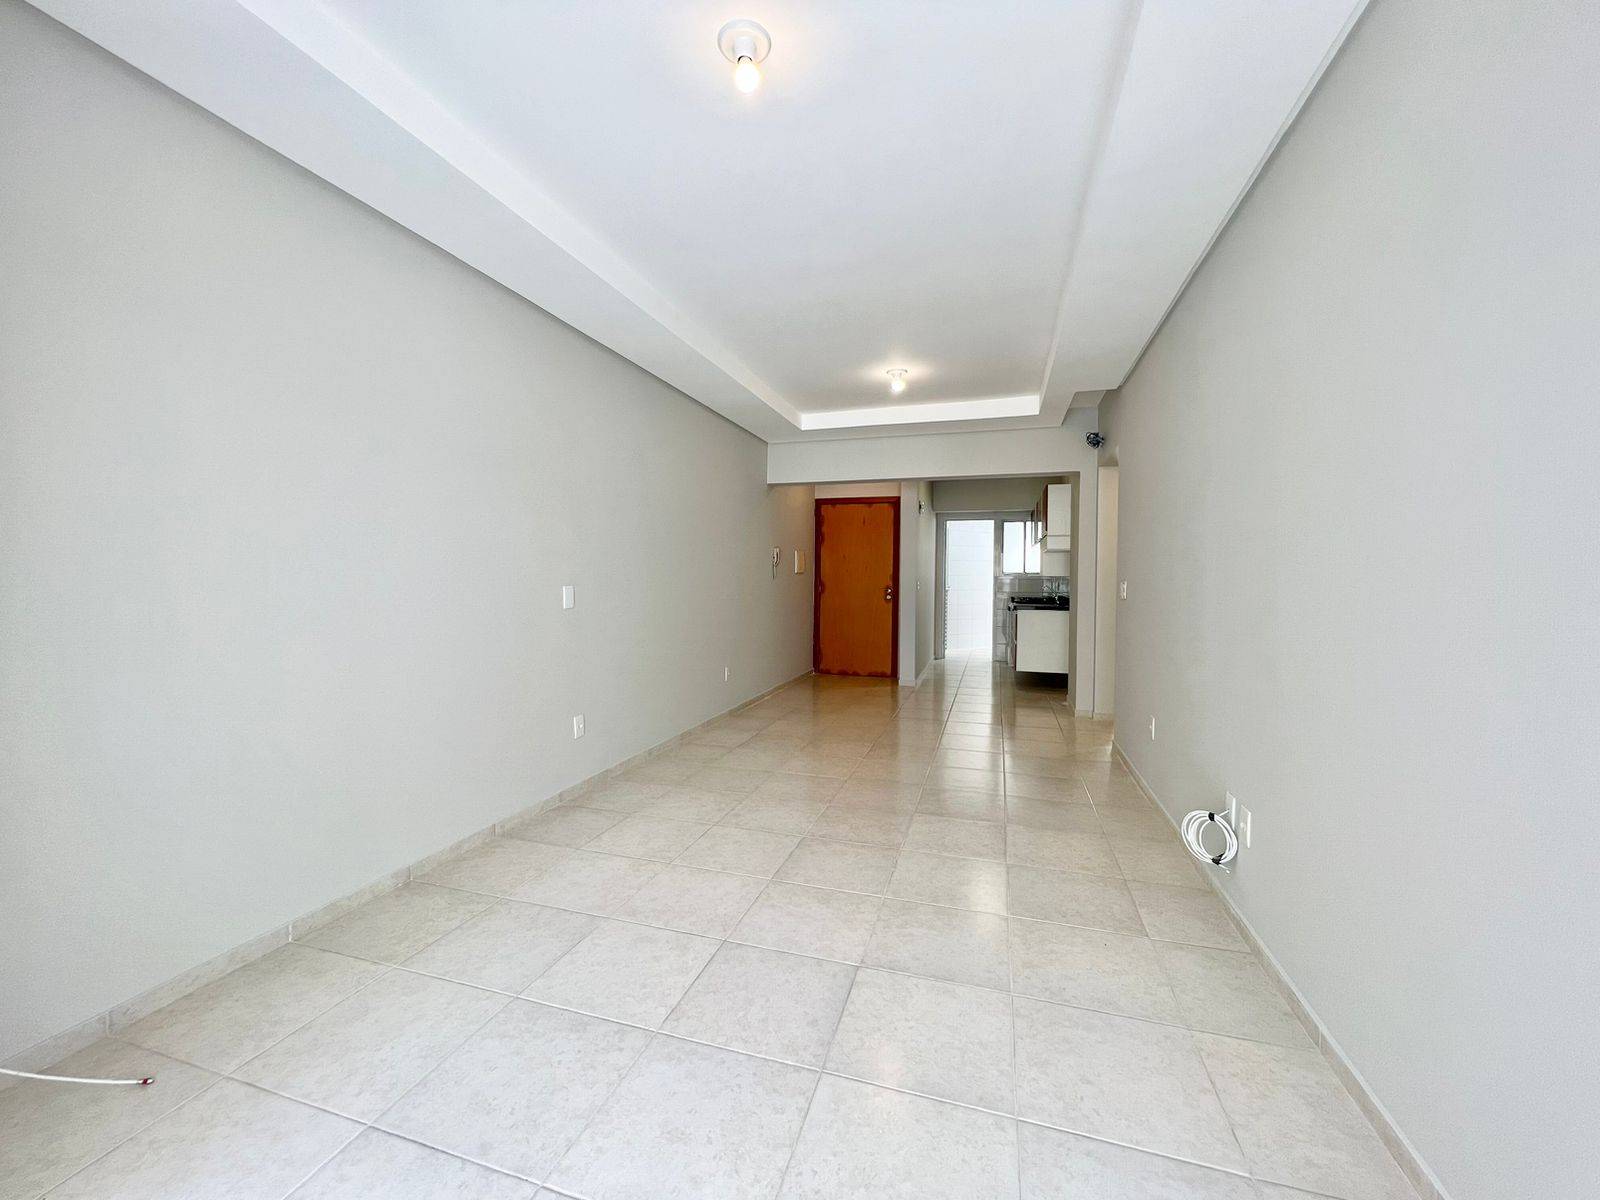 Apartamento 2 dormitórios em Capão da Canoa | Ref.: 2959